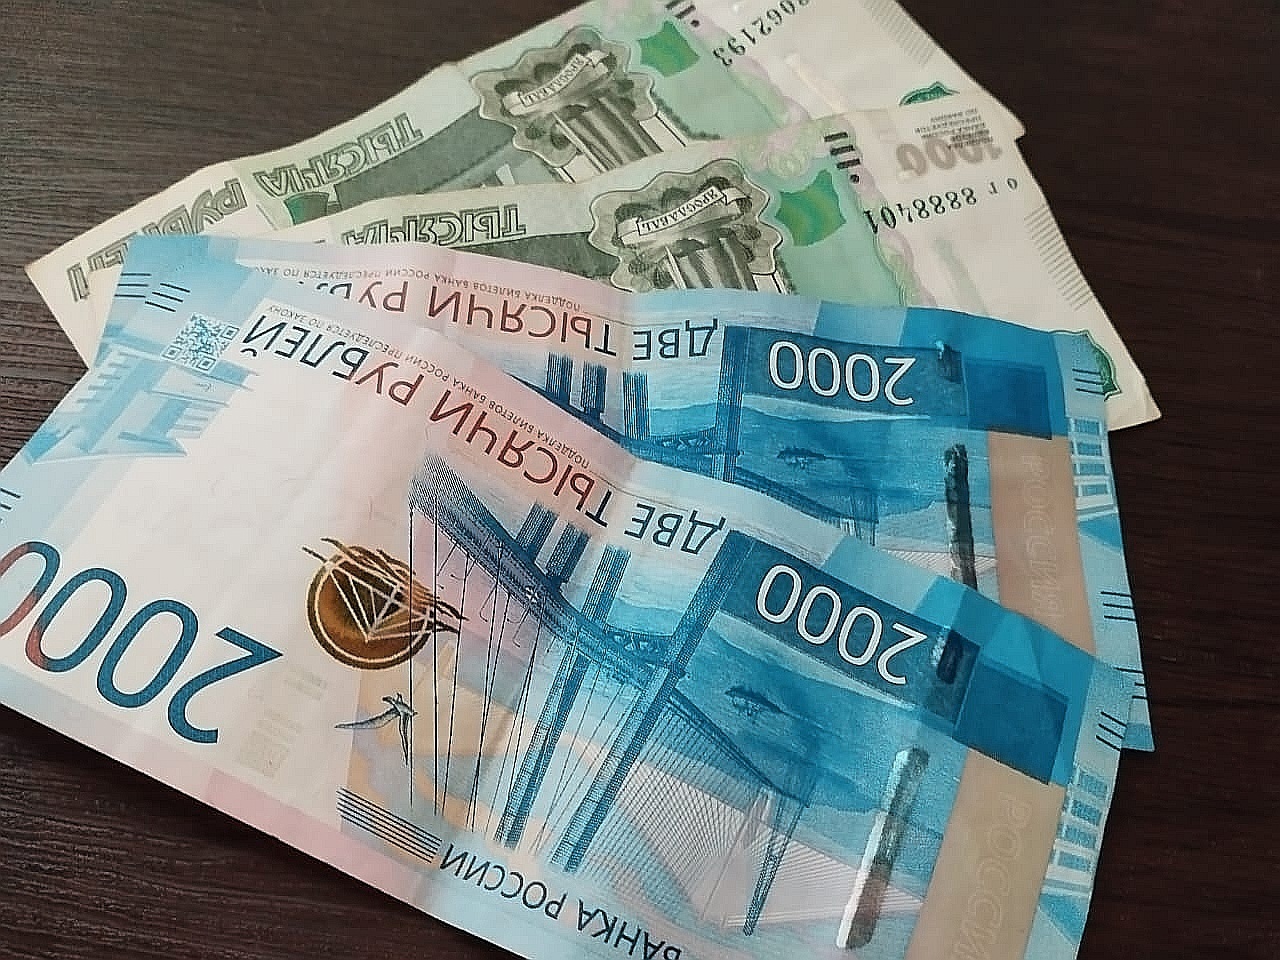 Пензенец, решив заработать на инвестициях, отдал мошеннику более 1 250 000 рублей